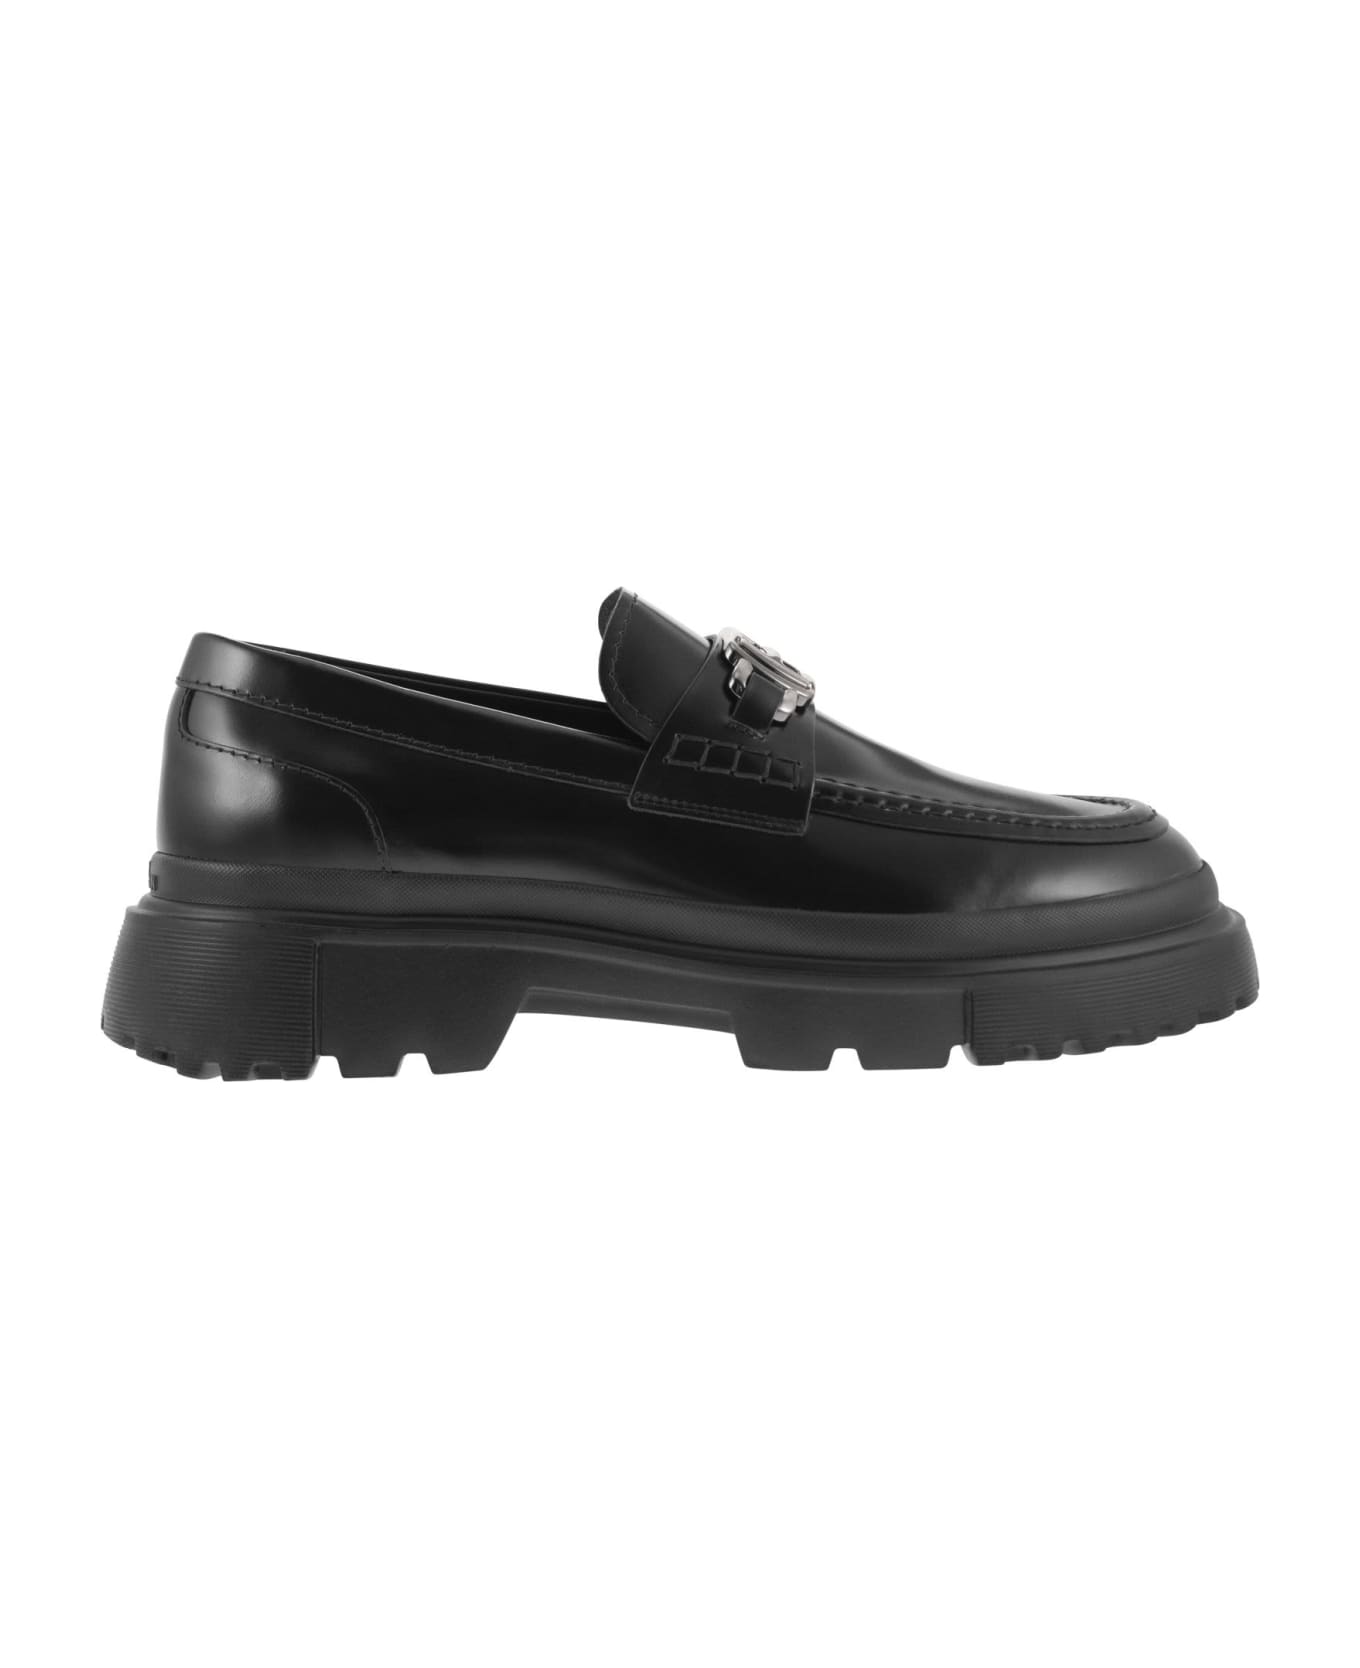 Hogan H629 - Leather Loafer - Black